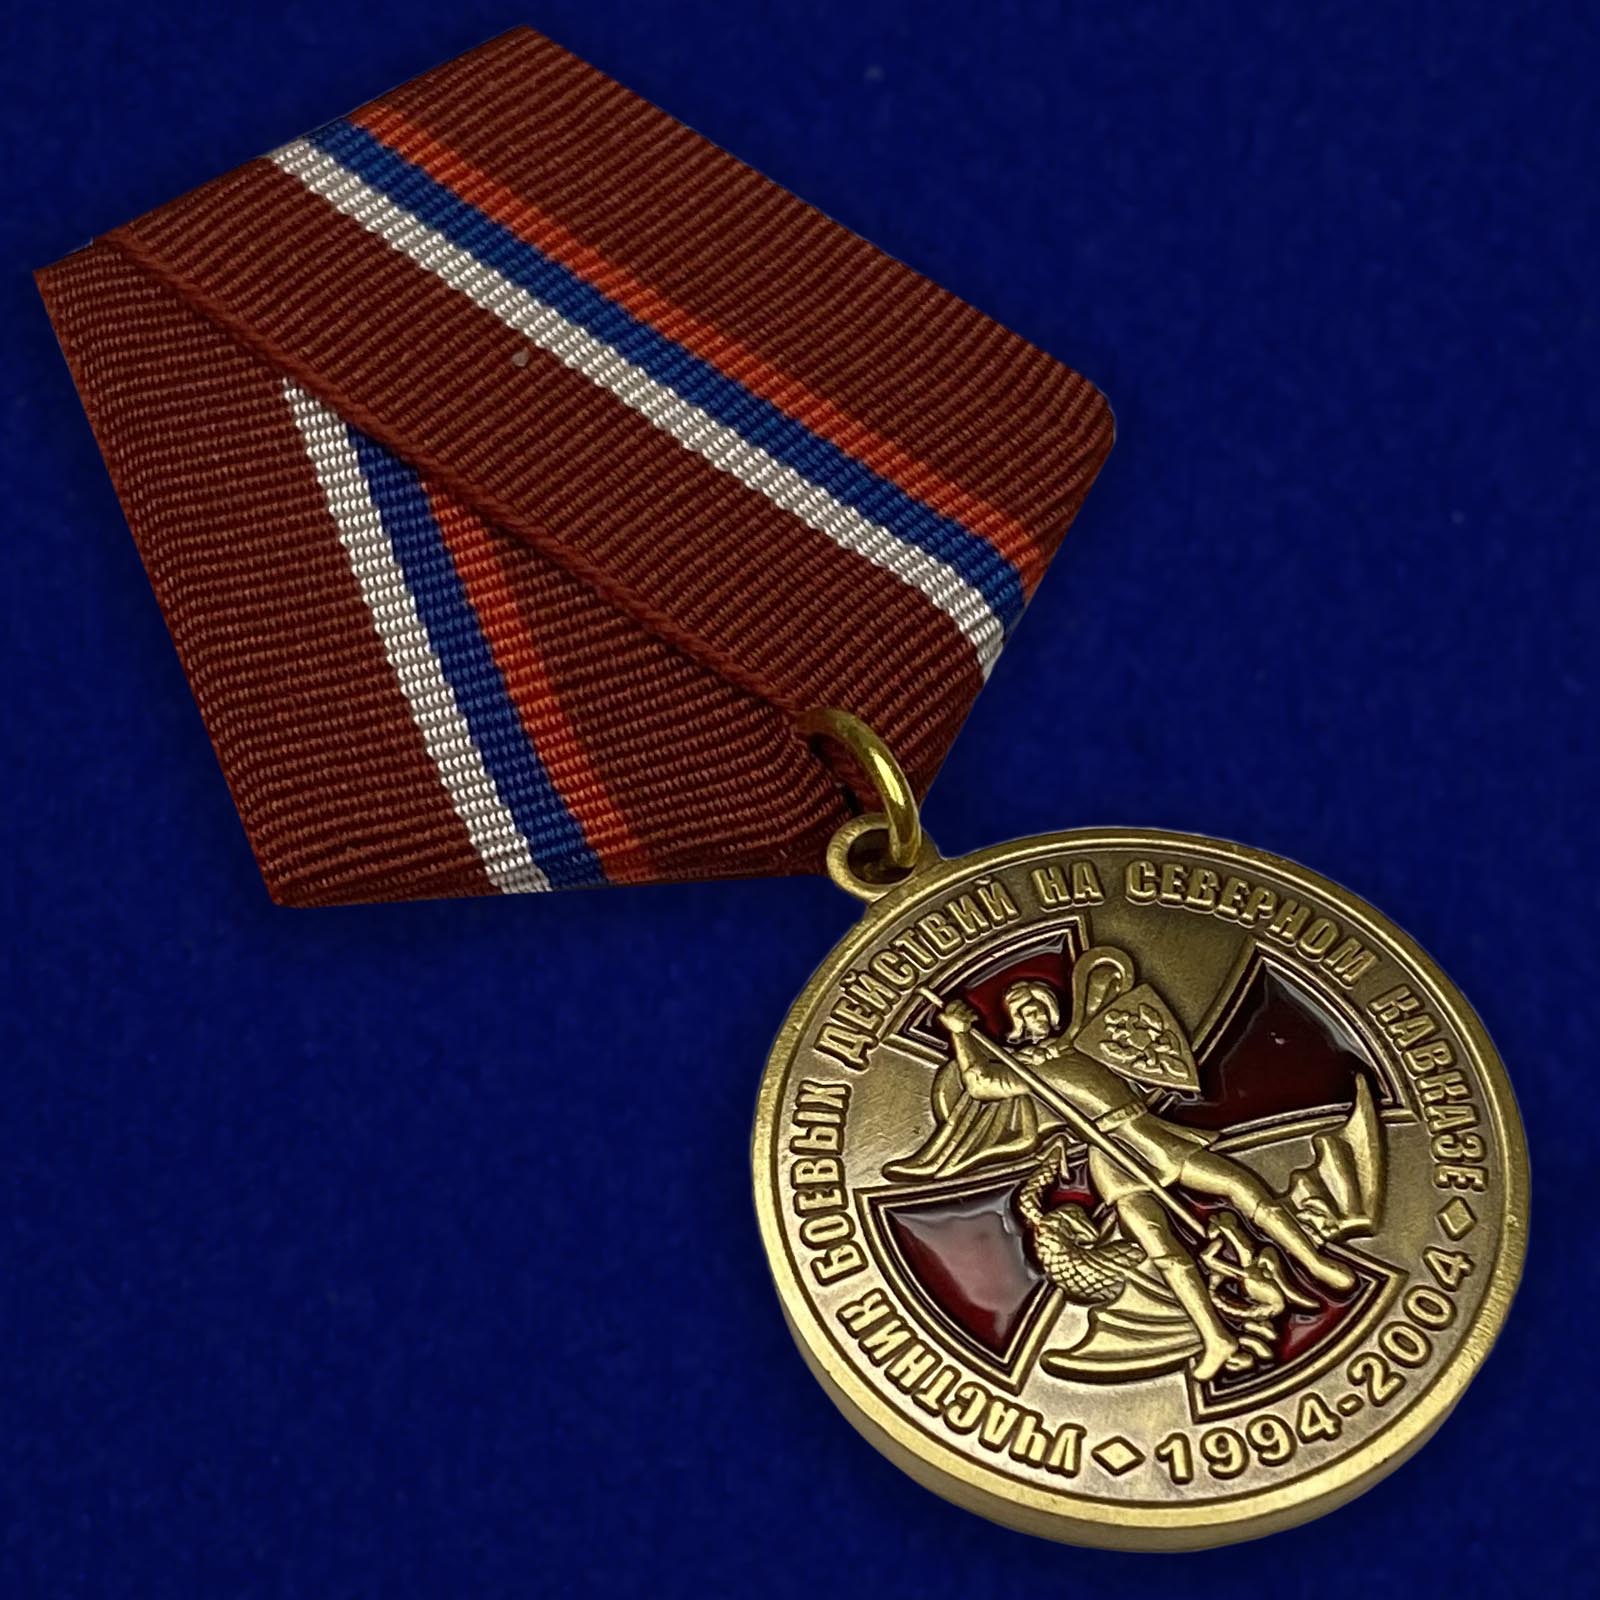 Медаль "Участник боевых действий на Северном Кавказе"